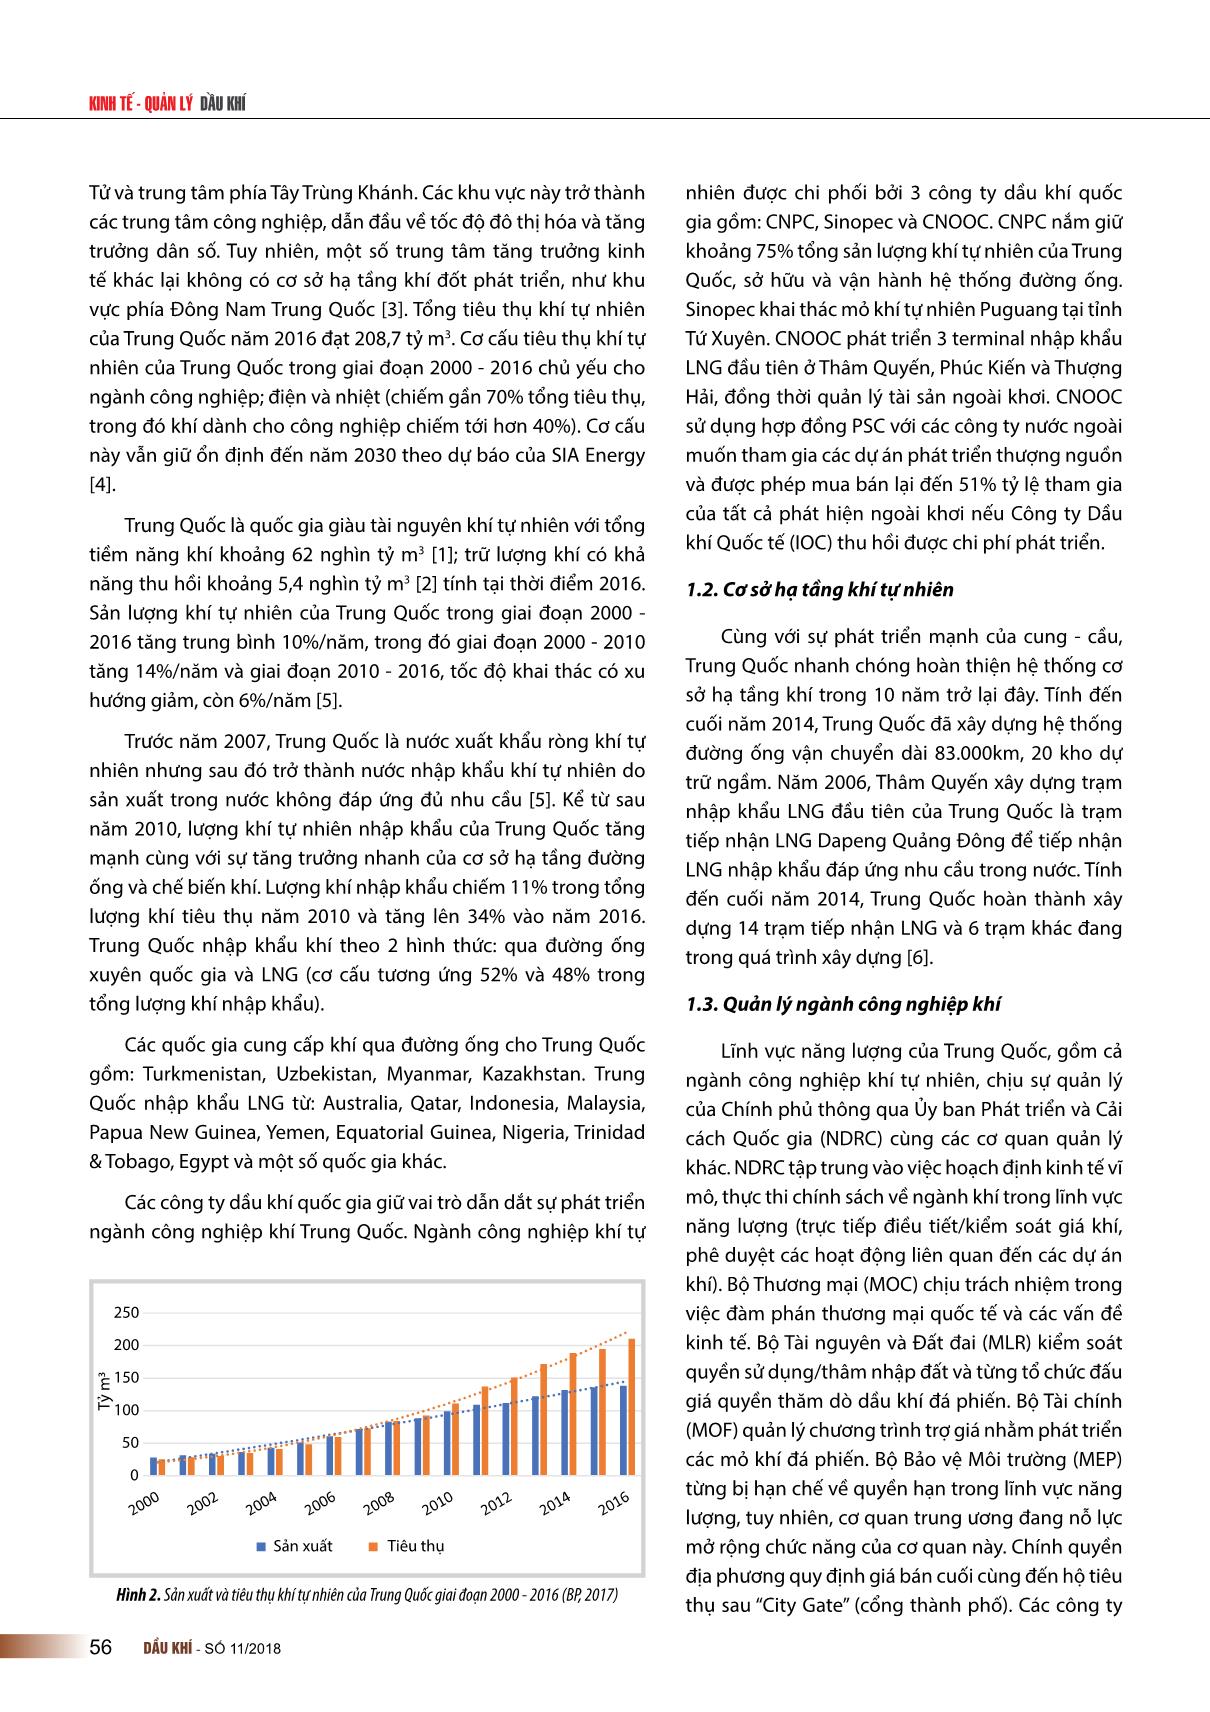 Vấn đề cải cách ngành công nghiệp khí Trung Quốc và bài học kinh nghiệm cho Việt Nam trang 2